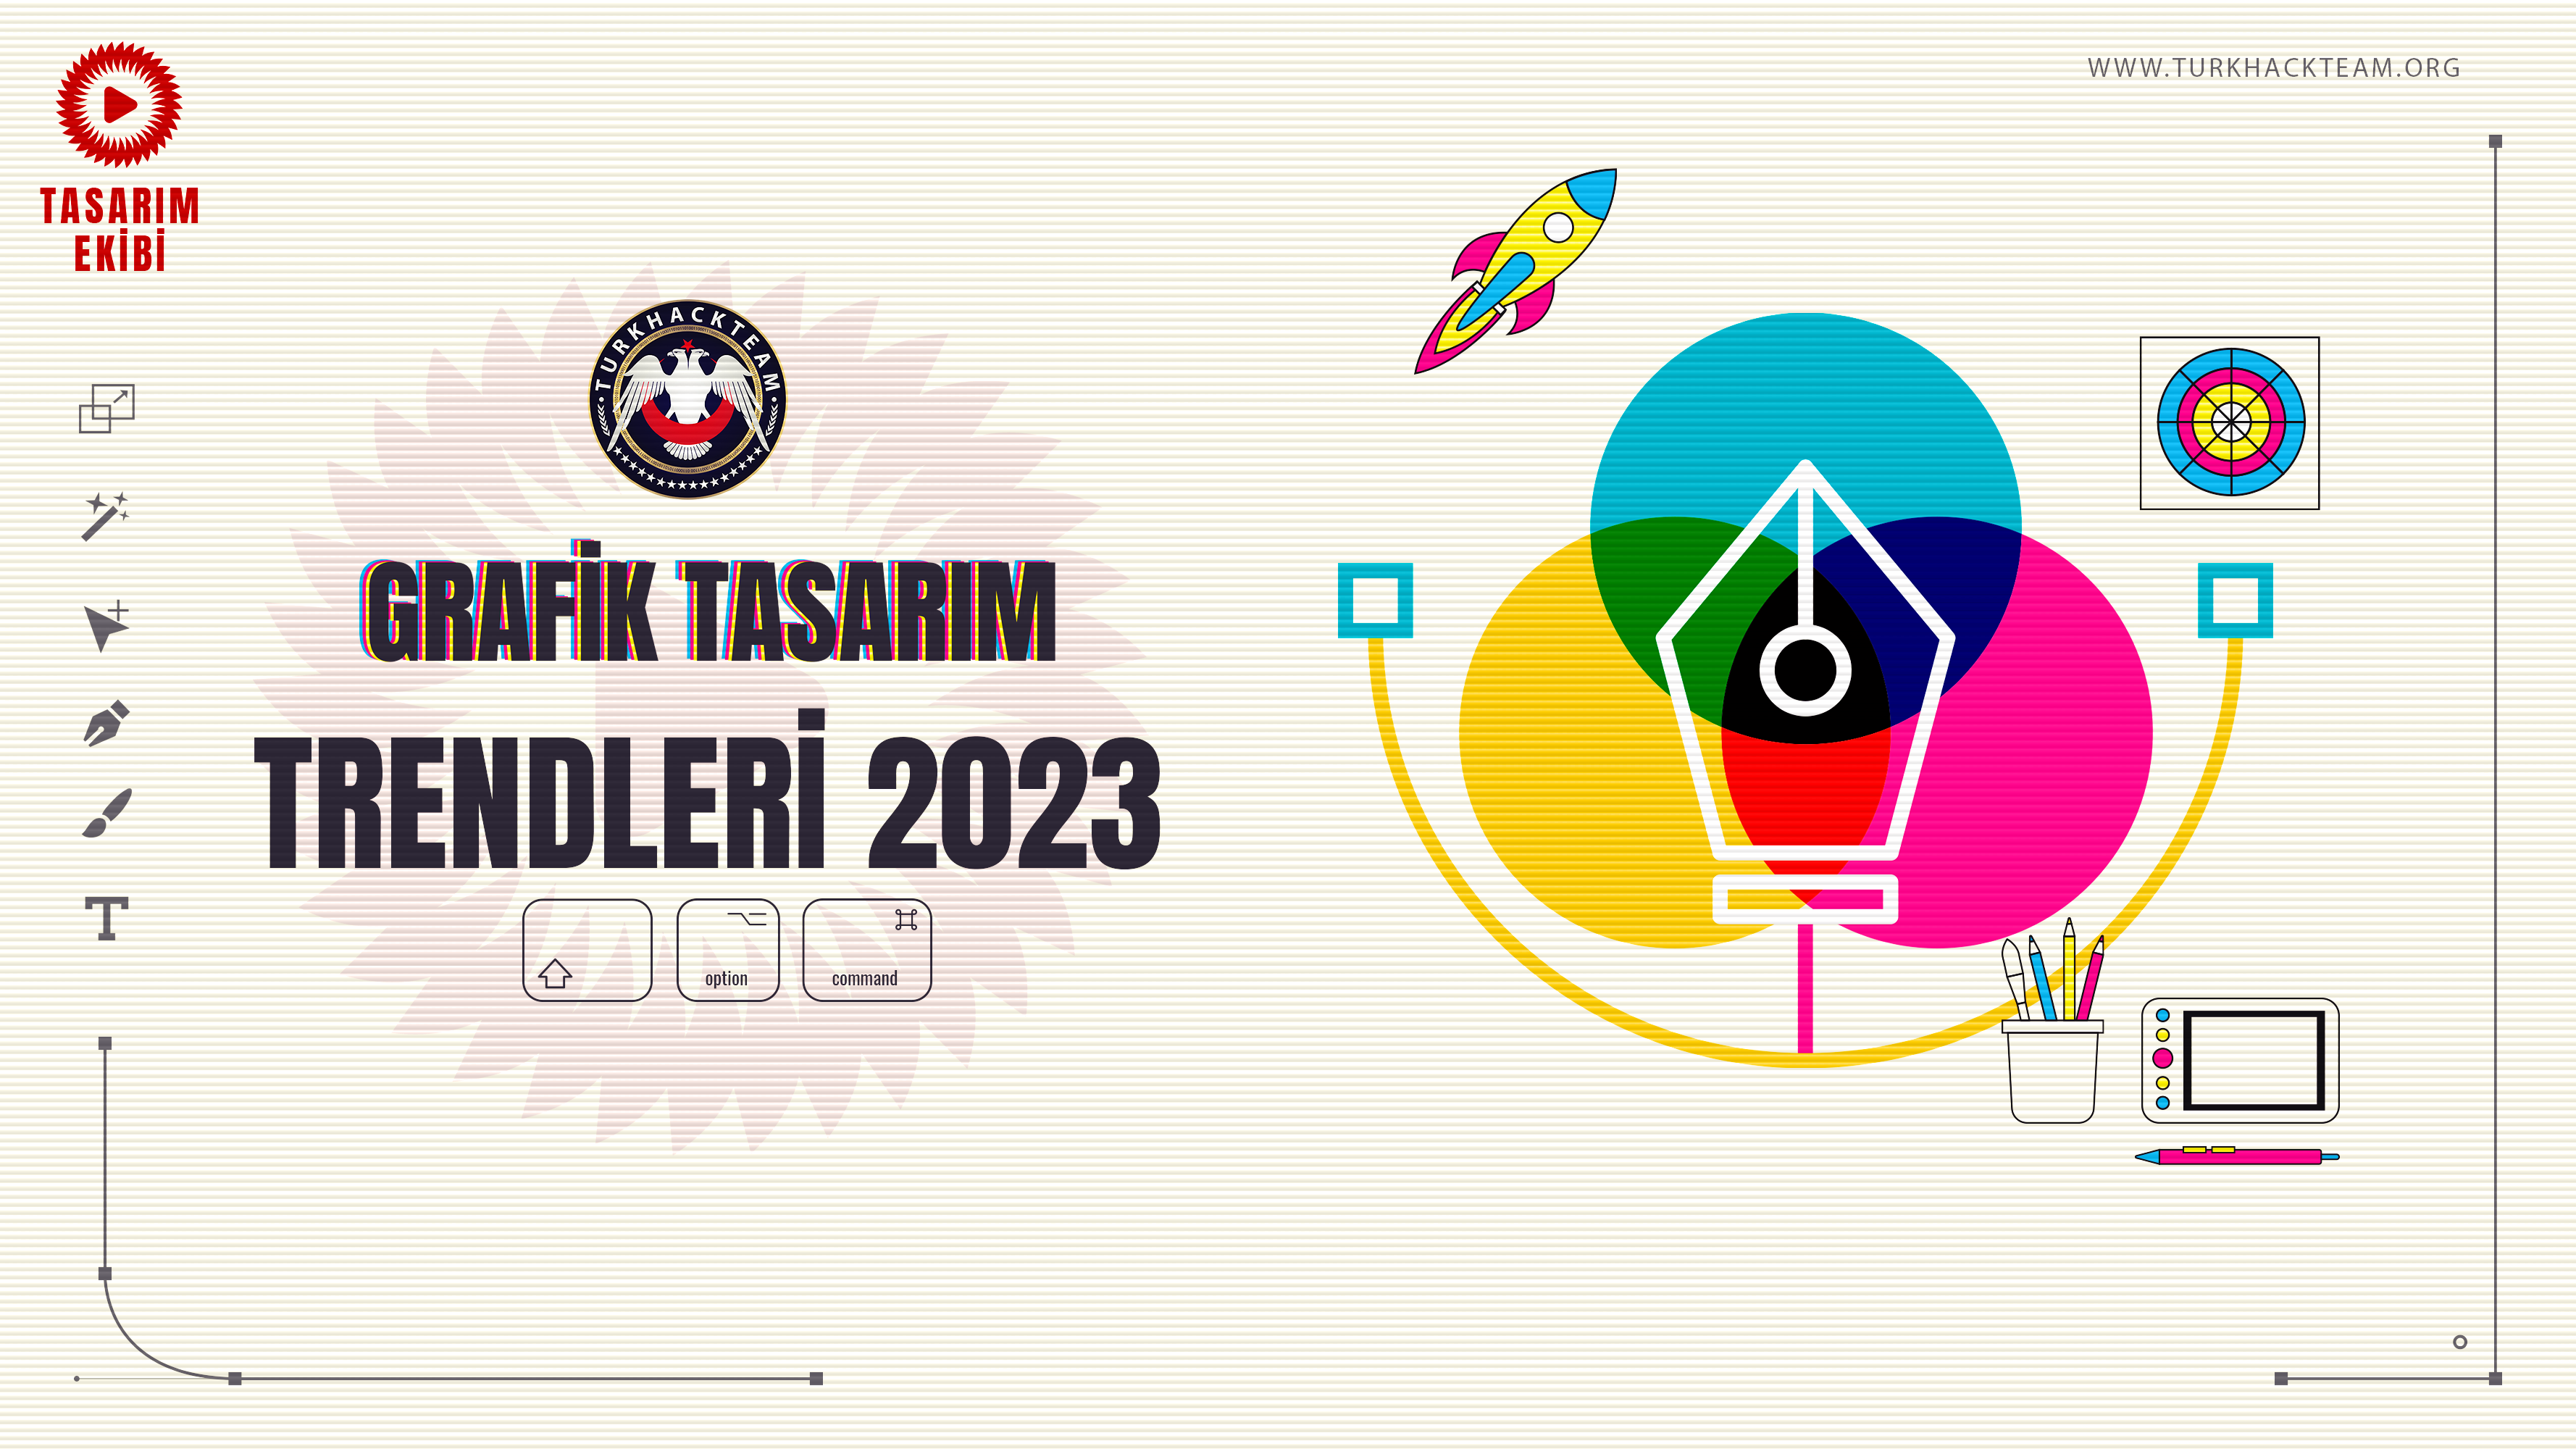 Grafik-Tasarim-Trendleri-2023.png